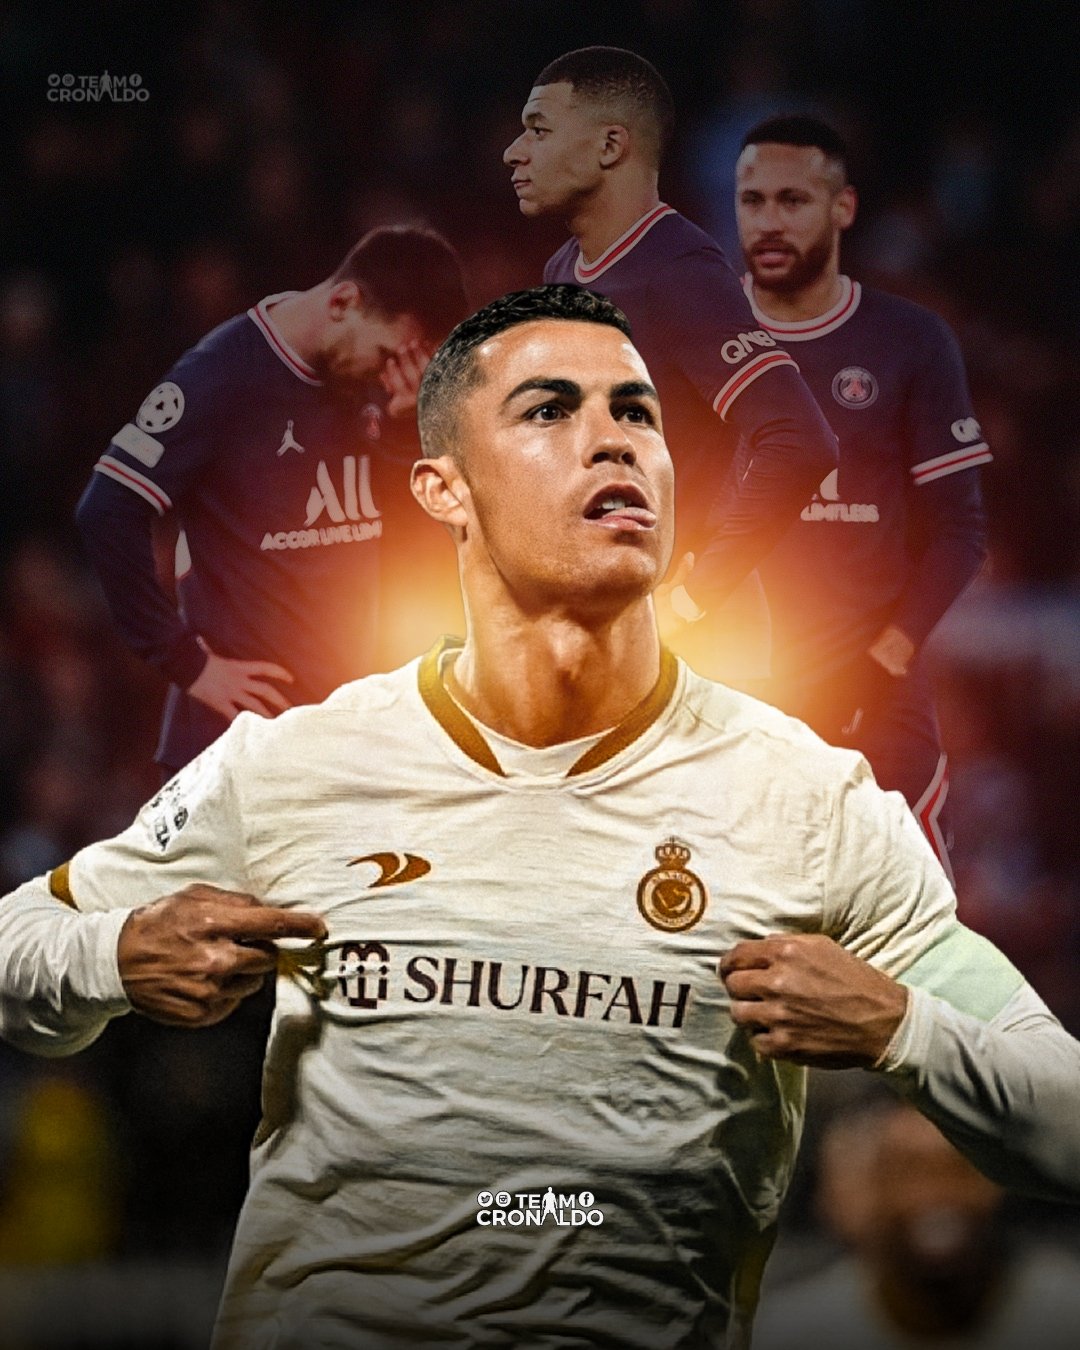 Cristiano Ronaldo: Cristiano Ronaldo là một trong những cầu thủ vĩ đại nhất trong lịch sử bóng đá thế giới. Hãy xem những bức ảnh liên quan đến CR7 để ngưỡng mộ tài năng và sự nghiệp thành công của ngôi sao này.